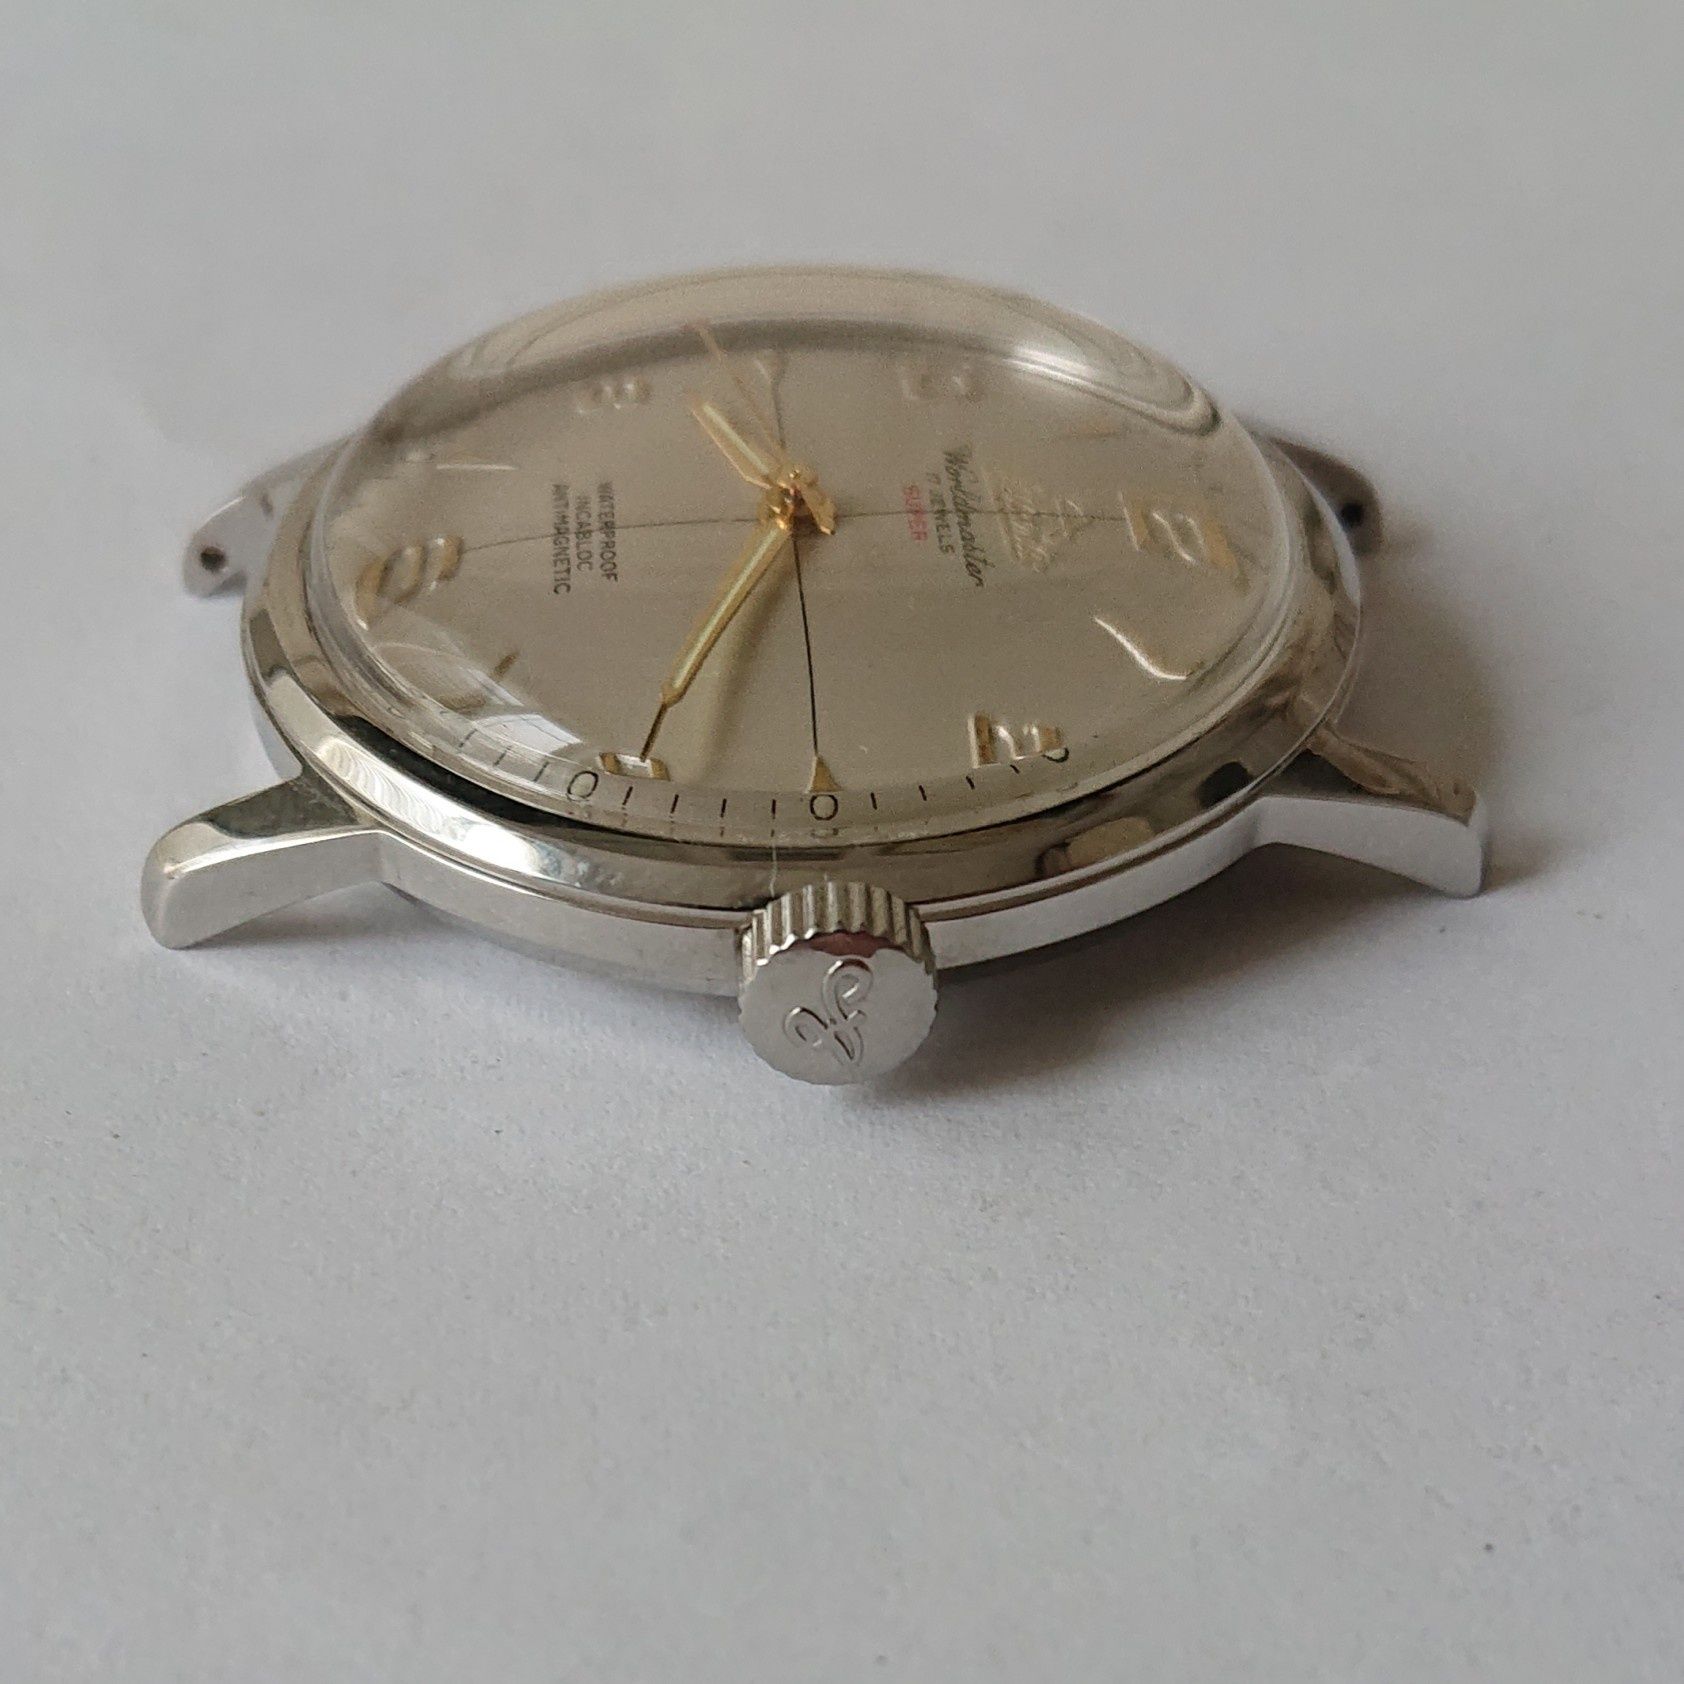 Atlantic Worldmaster Super zegarek naręczny mechaniczny kolekcjonerski